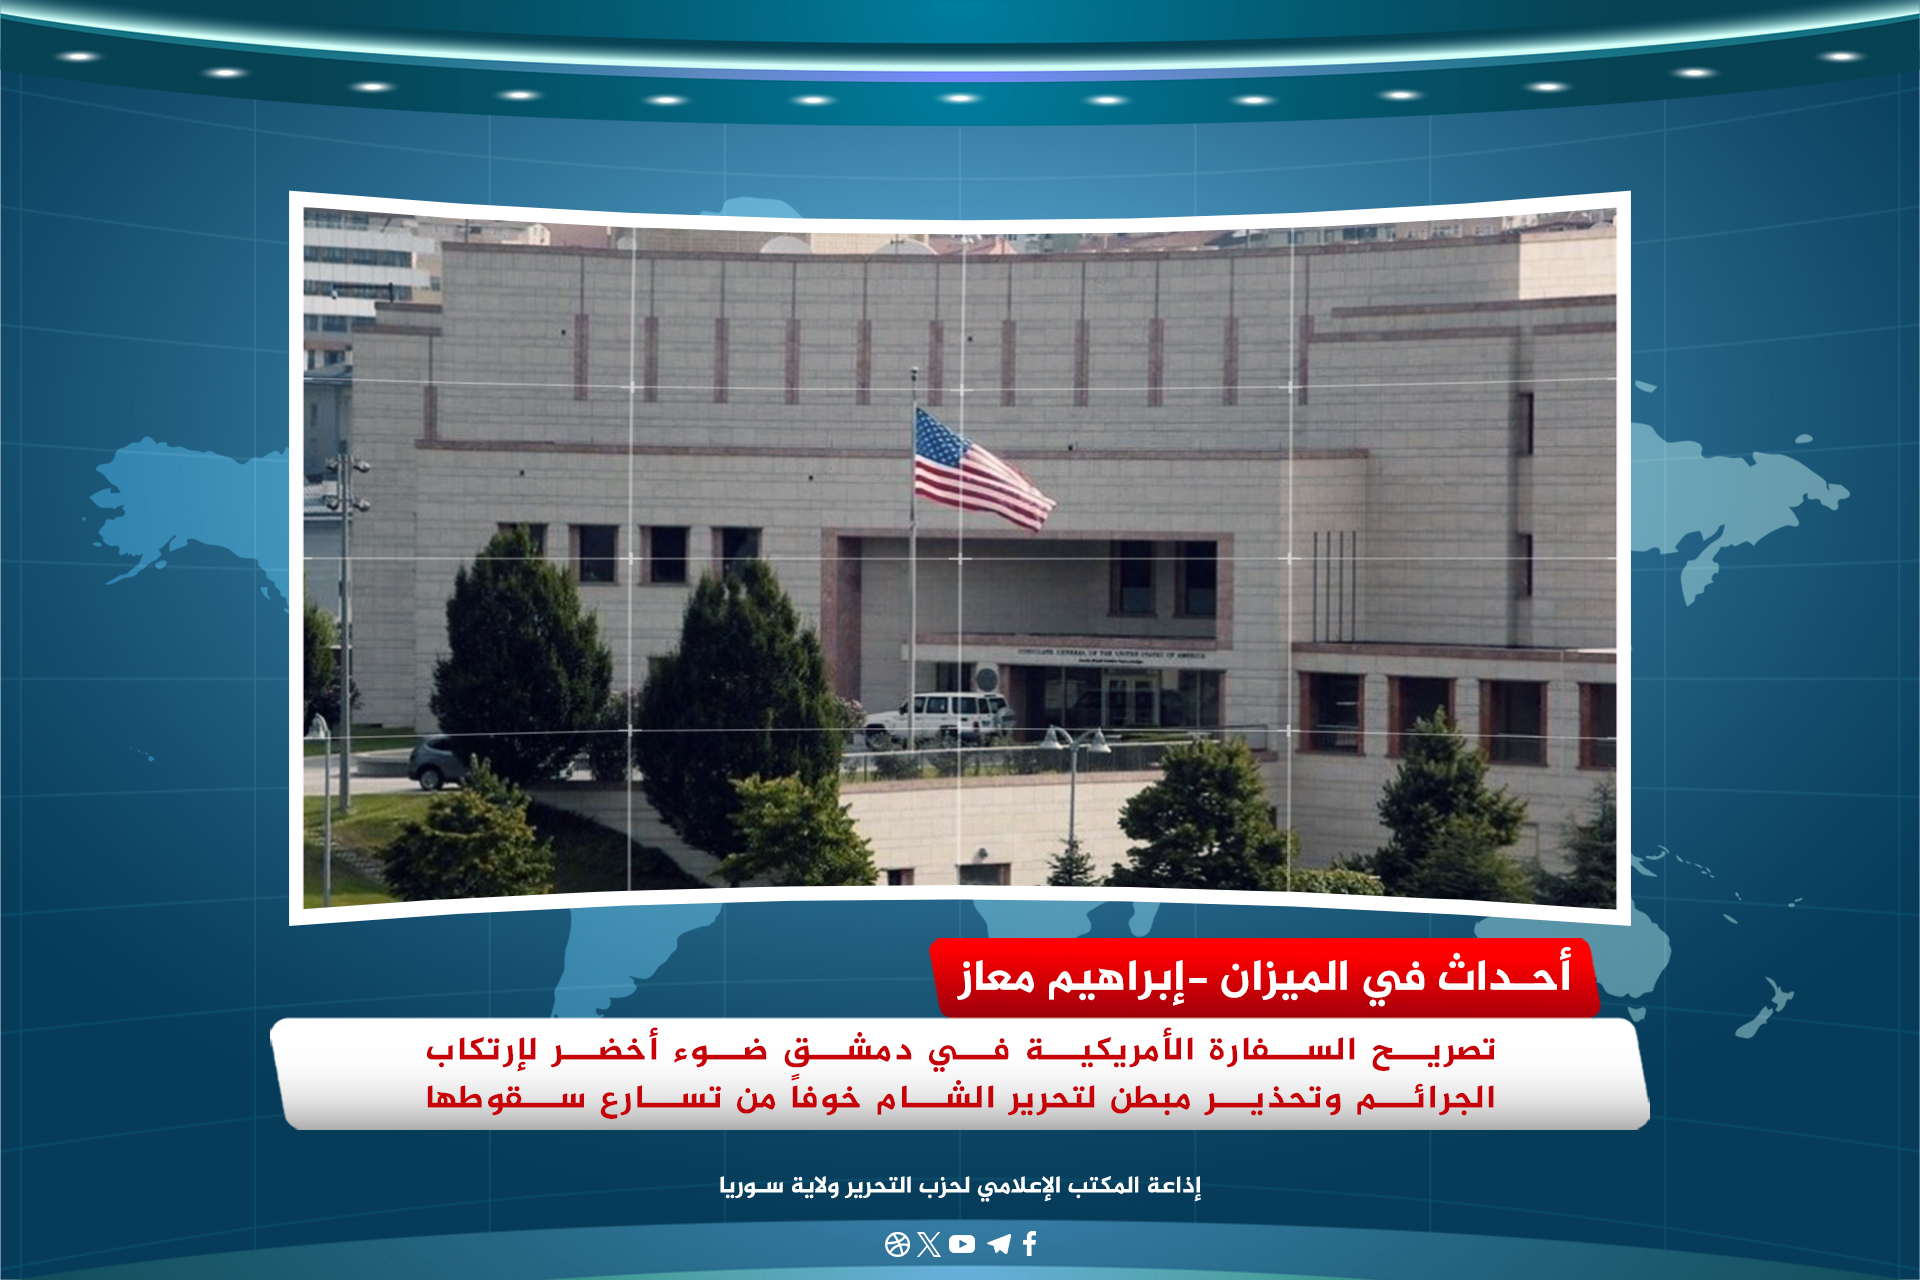 تصريح السفارة الأمريكية في دمشق ضوء أخضر لإرتكاب الجرائم وتحذير